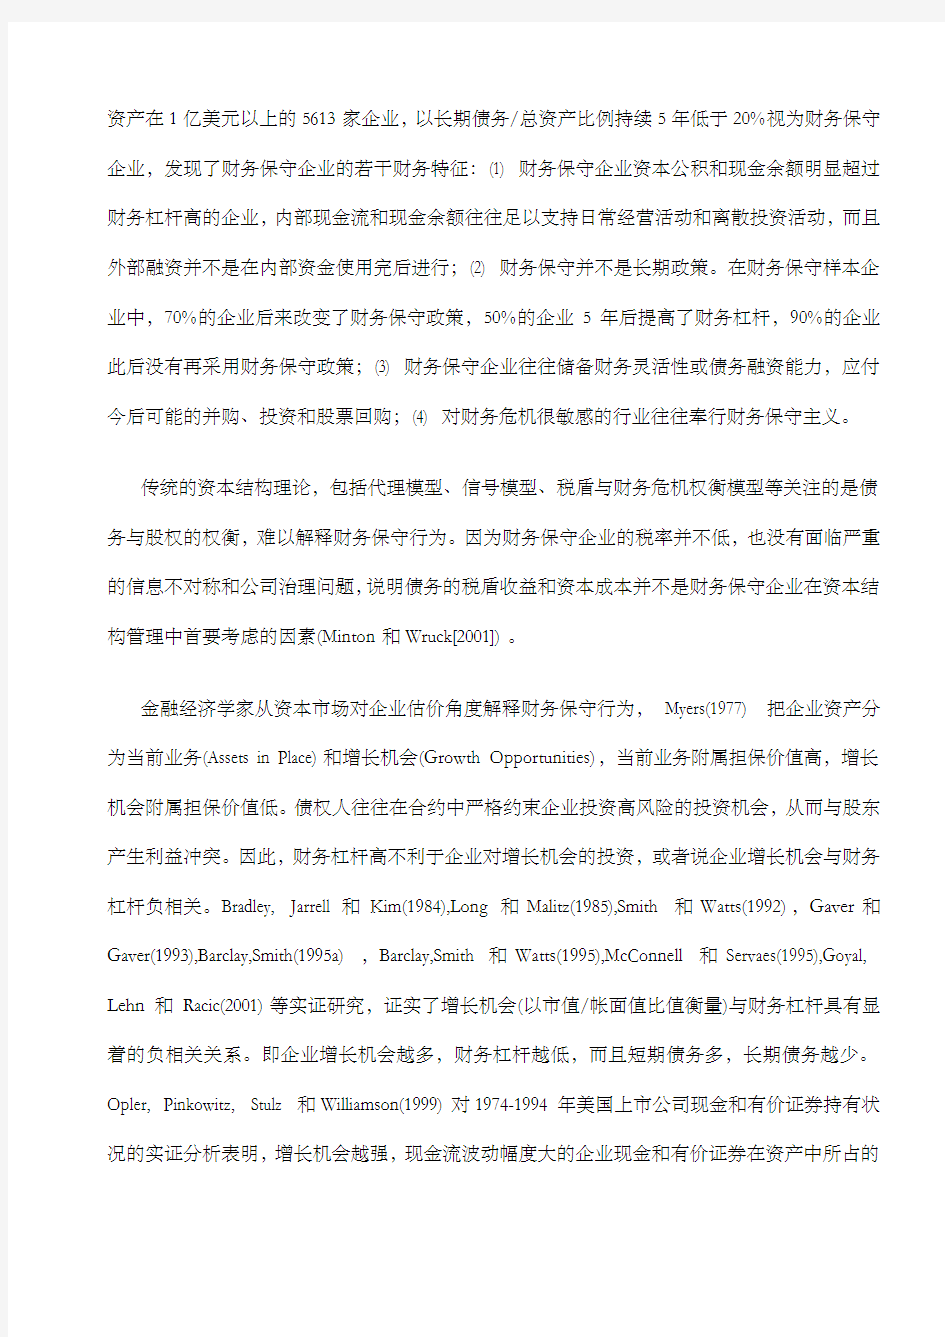 经典案例报告燕京啤酒分析产品过度竞争和财务保守行为 (1)